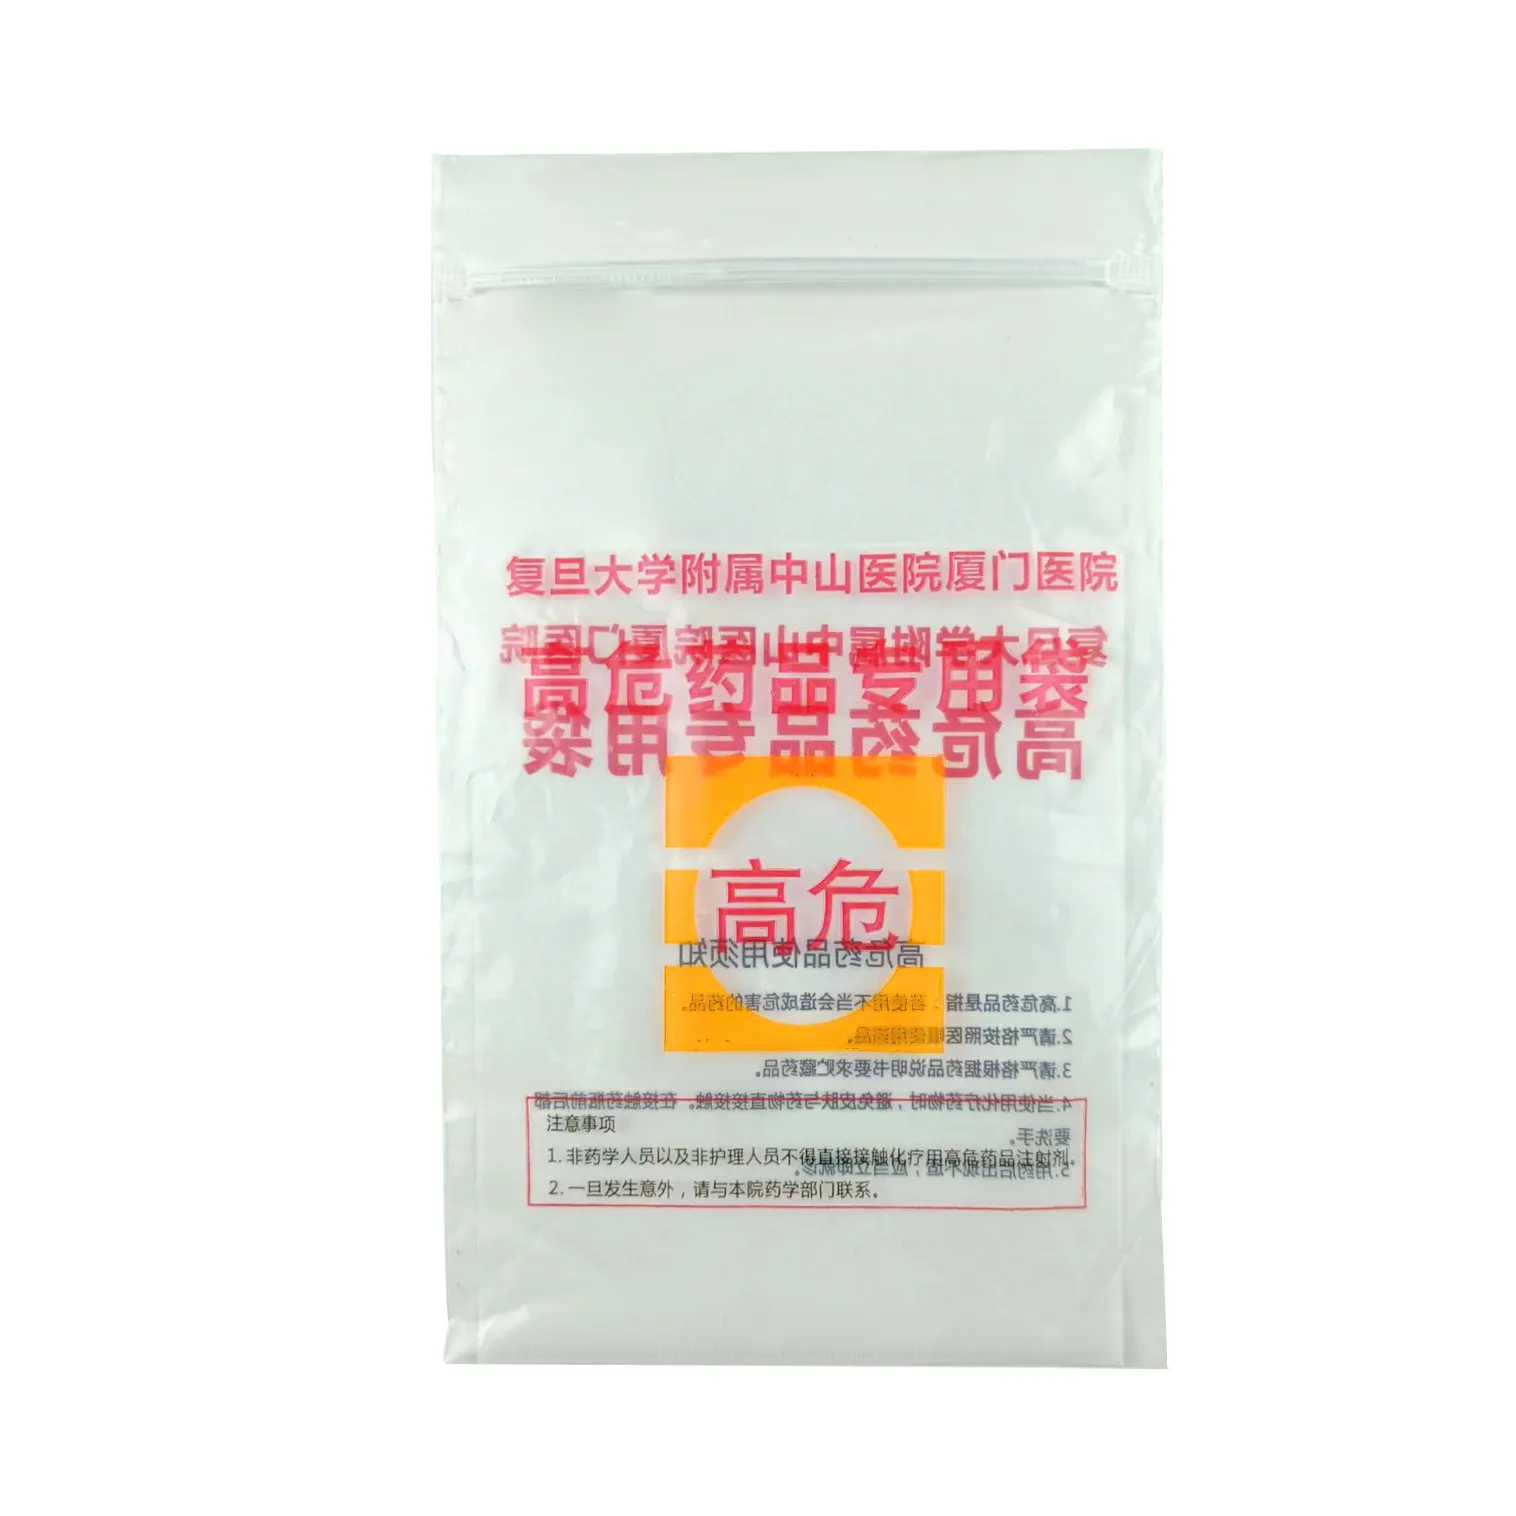 LDPE sac d'emballage de médicaments de qualité médicale sac transparent en plastique pour médicaments pilules